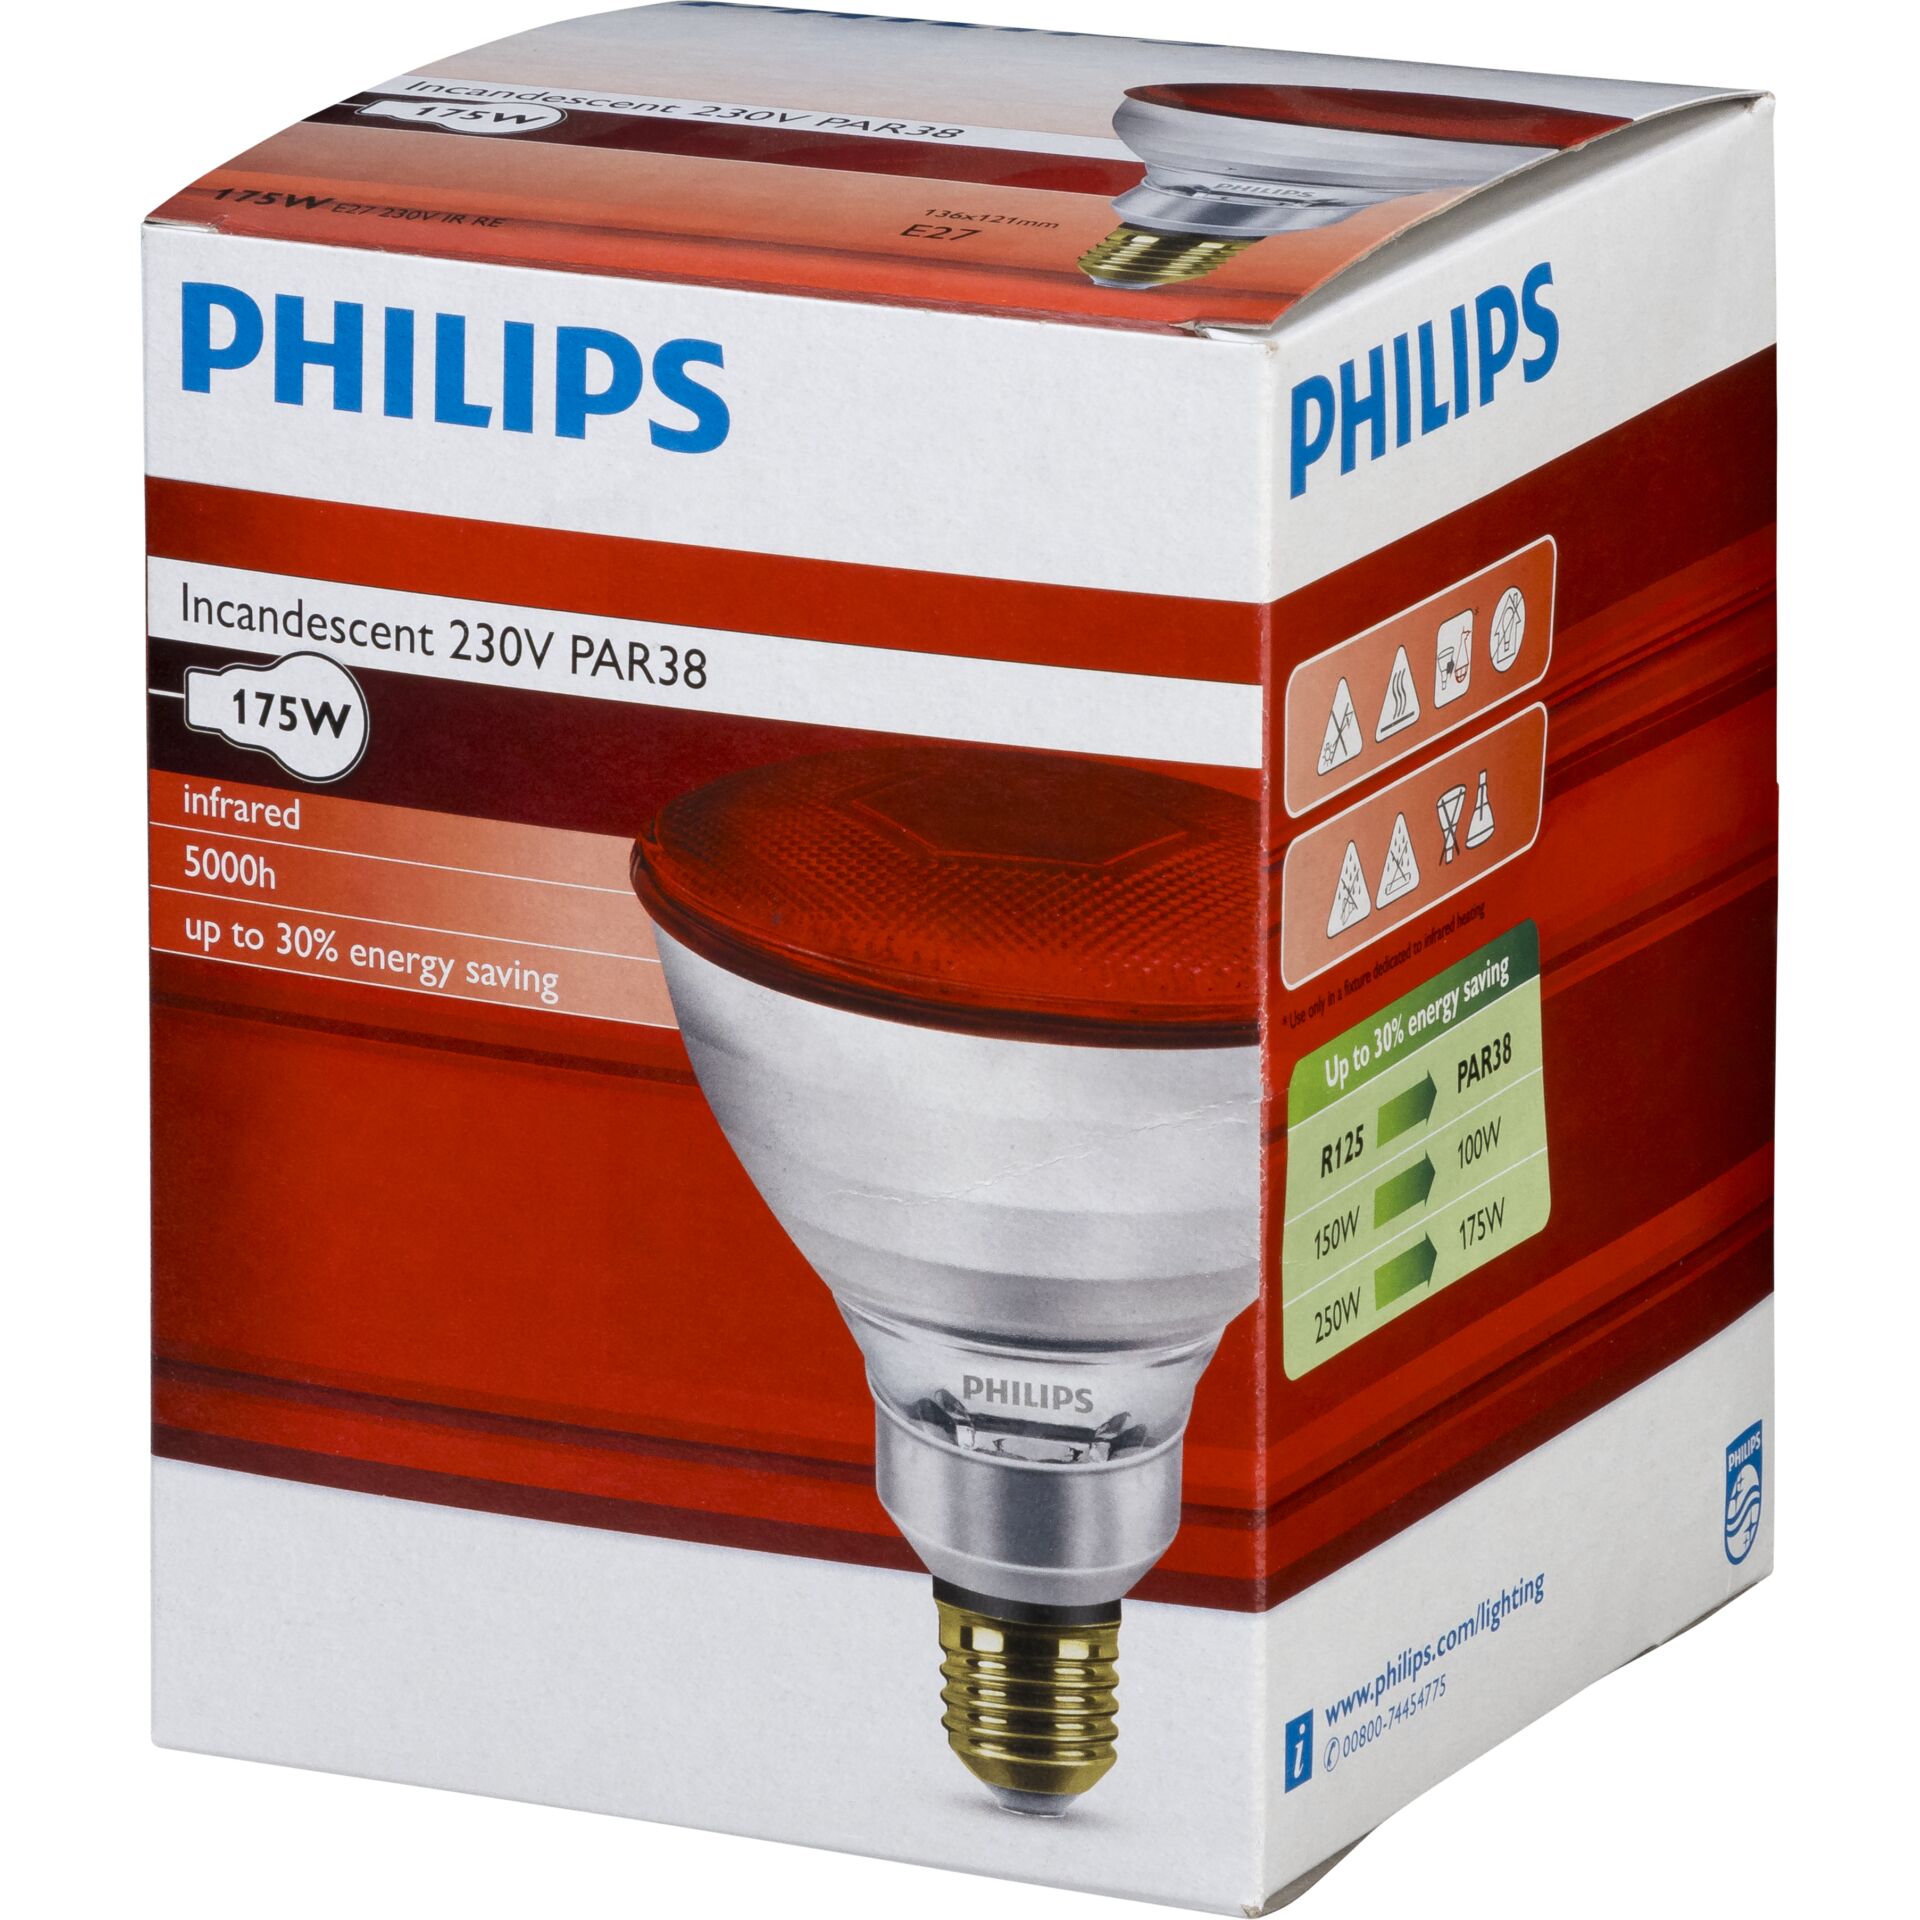 Philips lampada infrar. PAR38 IR 175W E27 230 rosso